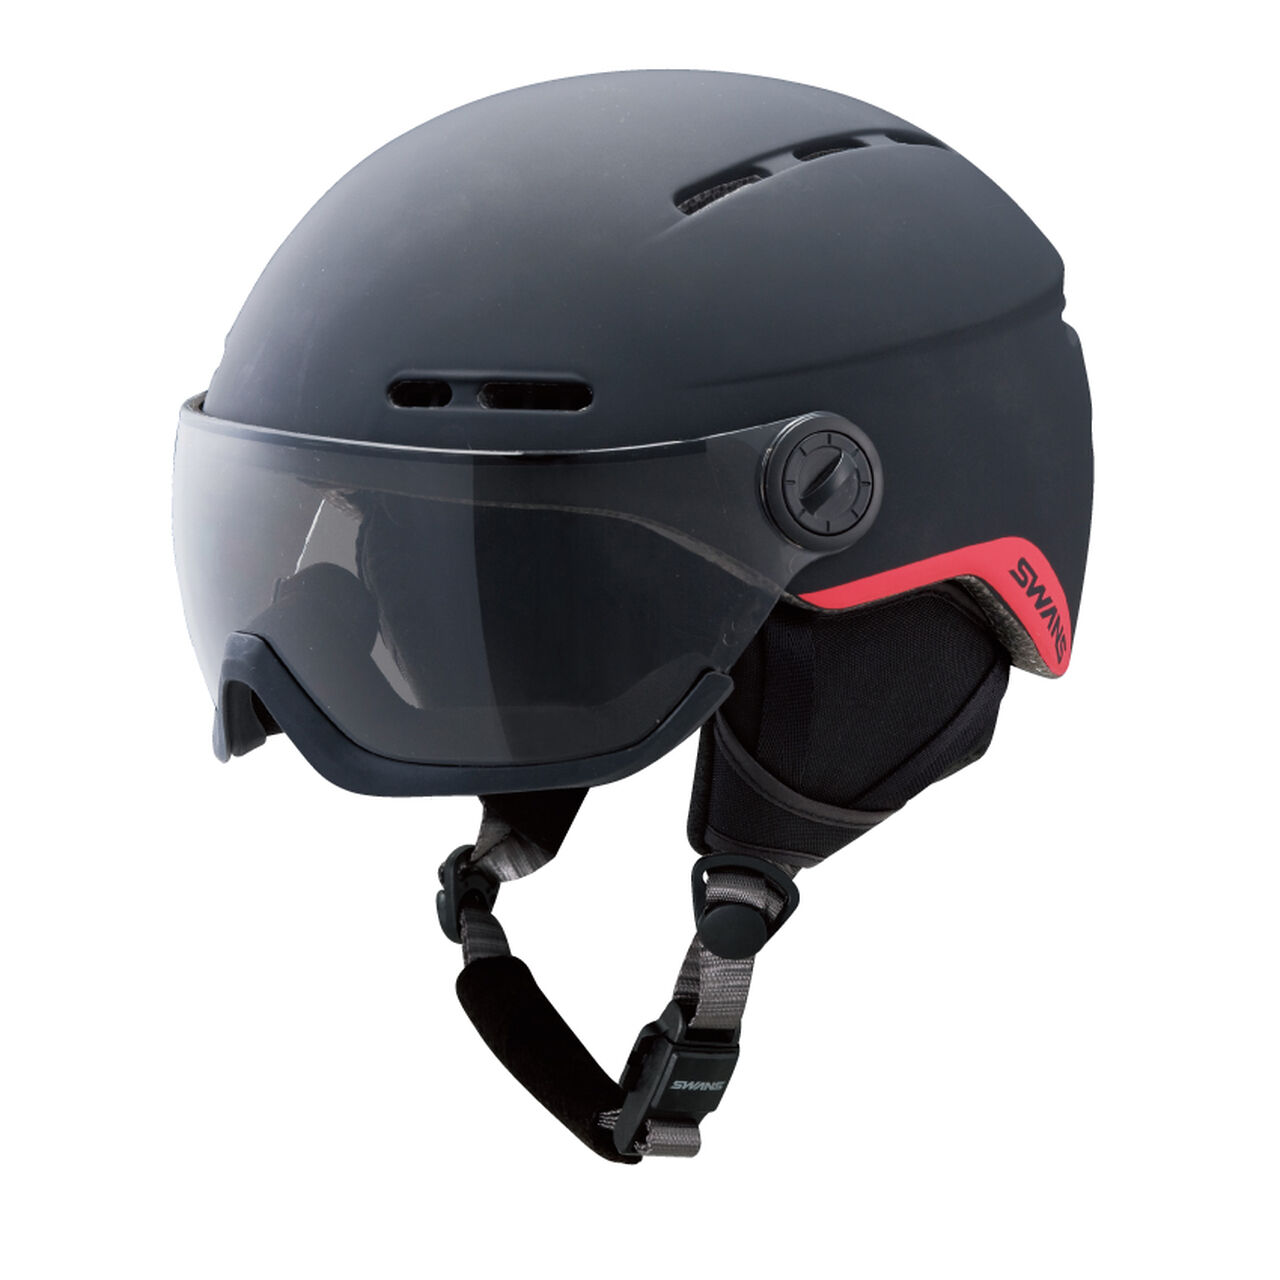 H-81 visor helmet Matte black,Opt1, large image number 0